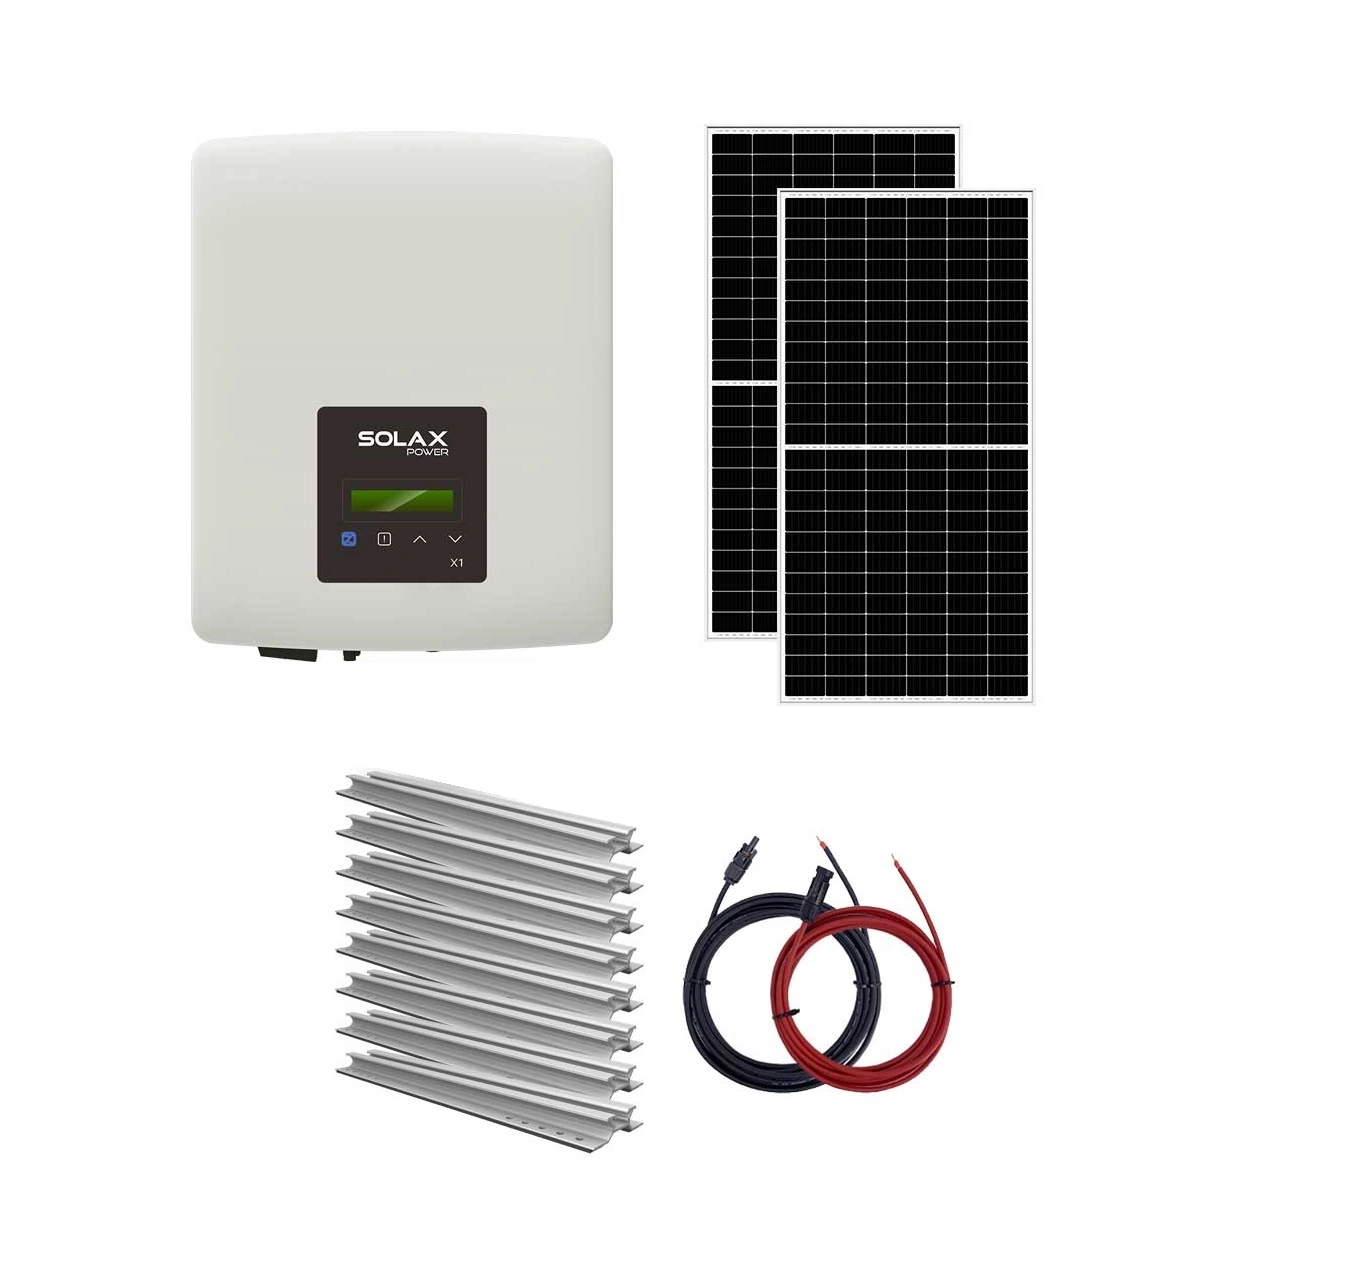 Sisteme fotovoltaice on-grid - Sistem fotovoltaic On-Grid 8 kW trifazat Solax - tigla, climasoft.ro